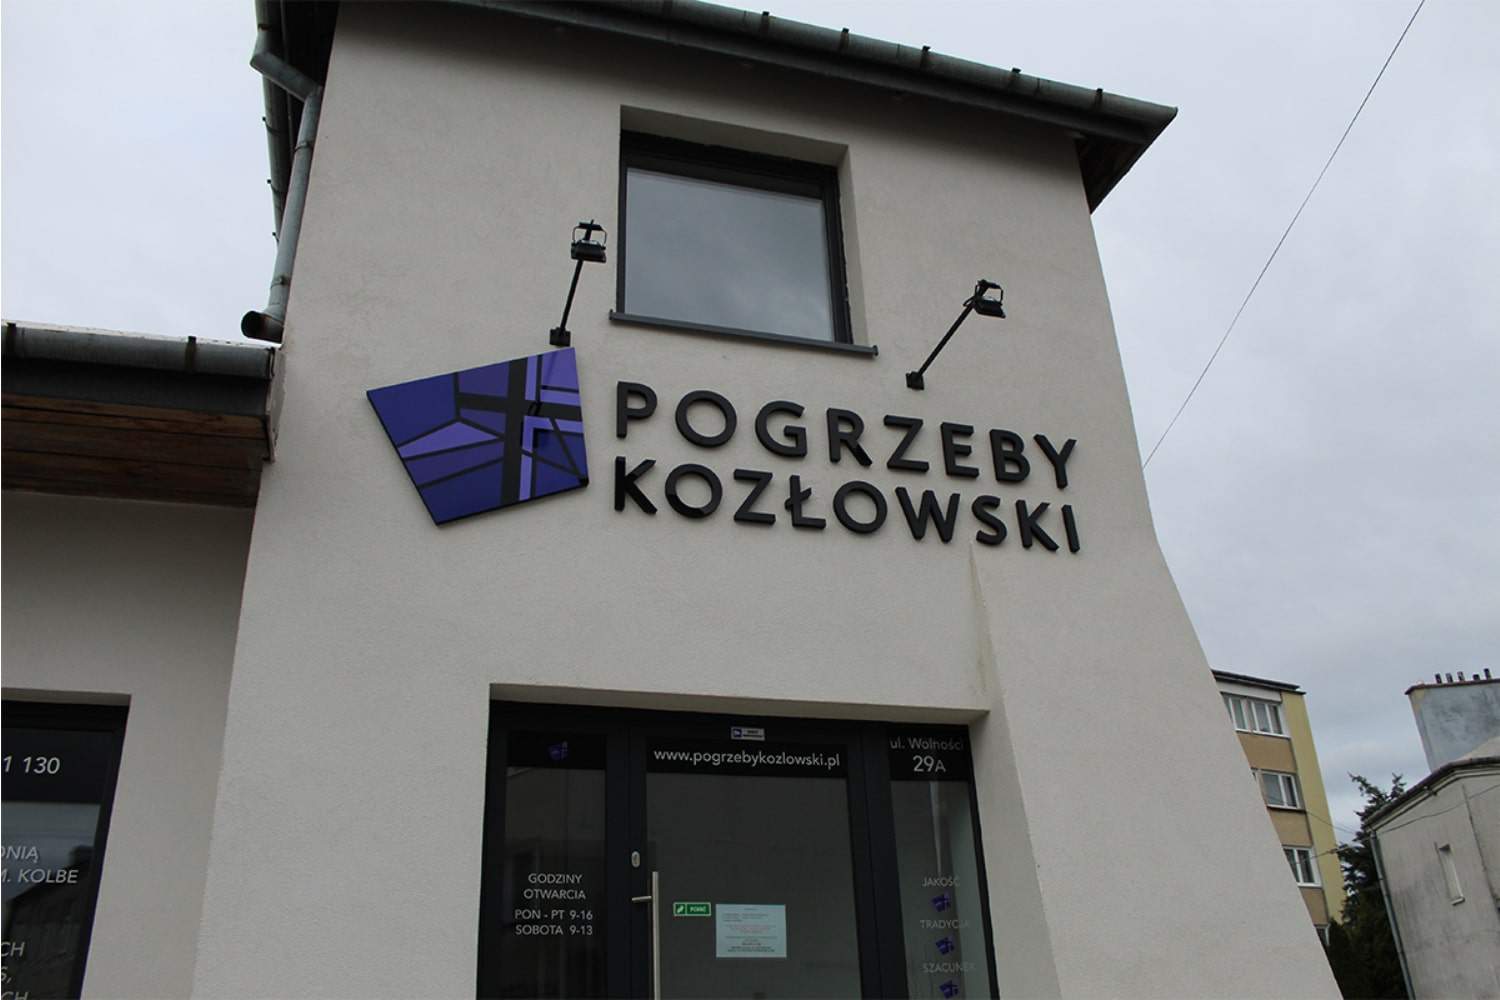 Logo zakład pogrzebowy kozłowski na budynku firmy